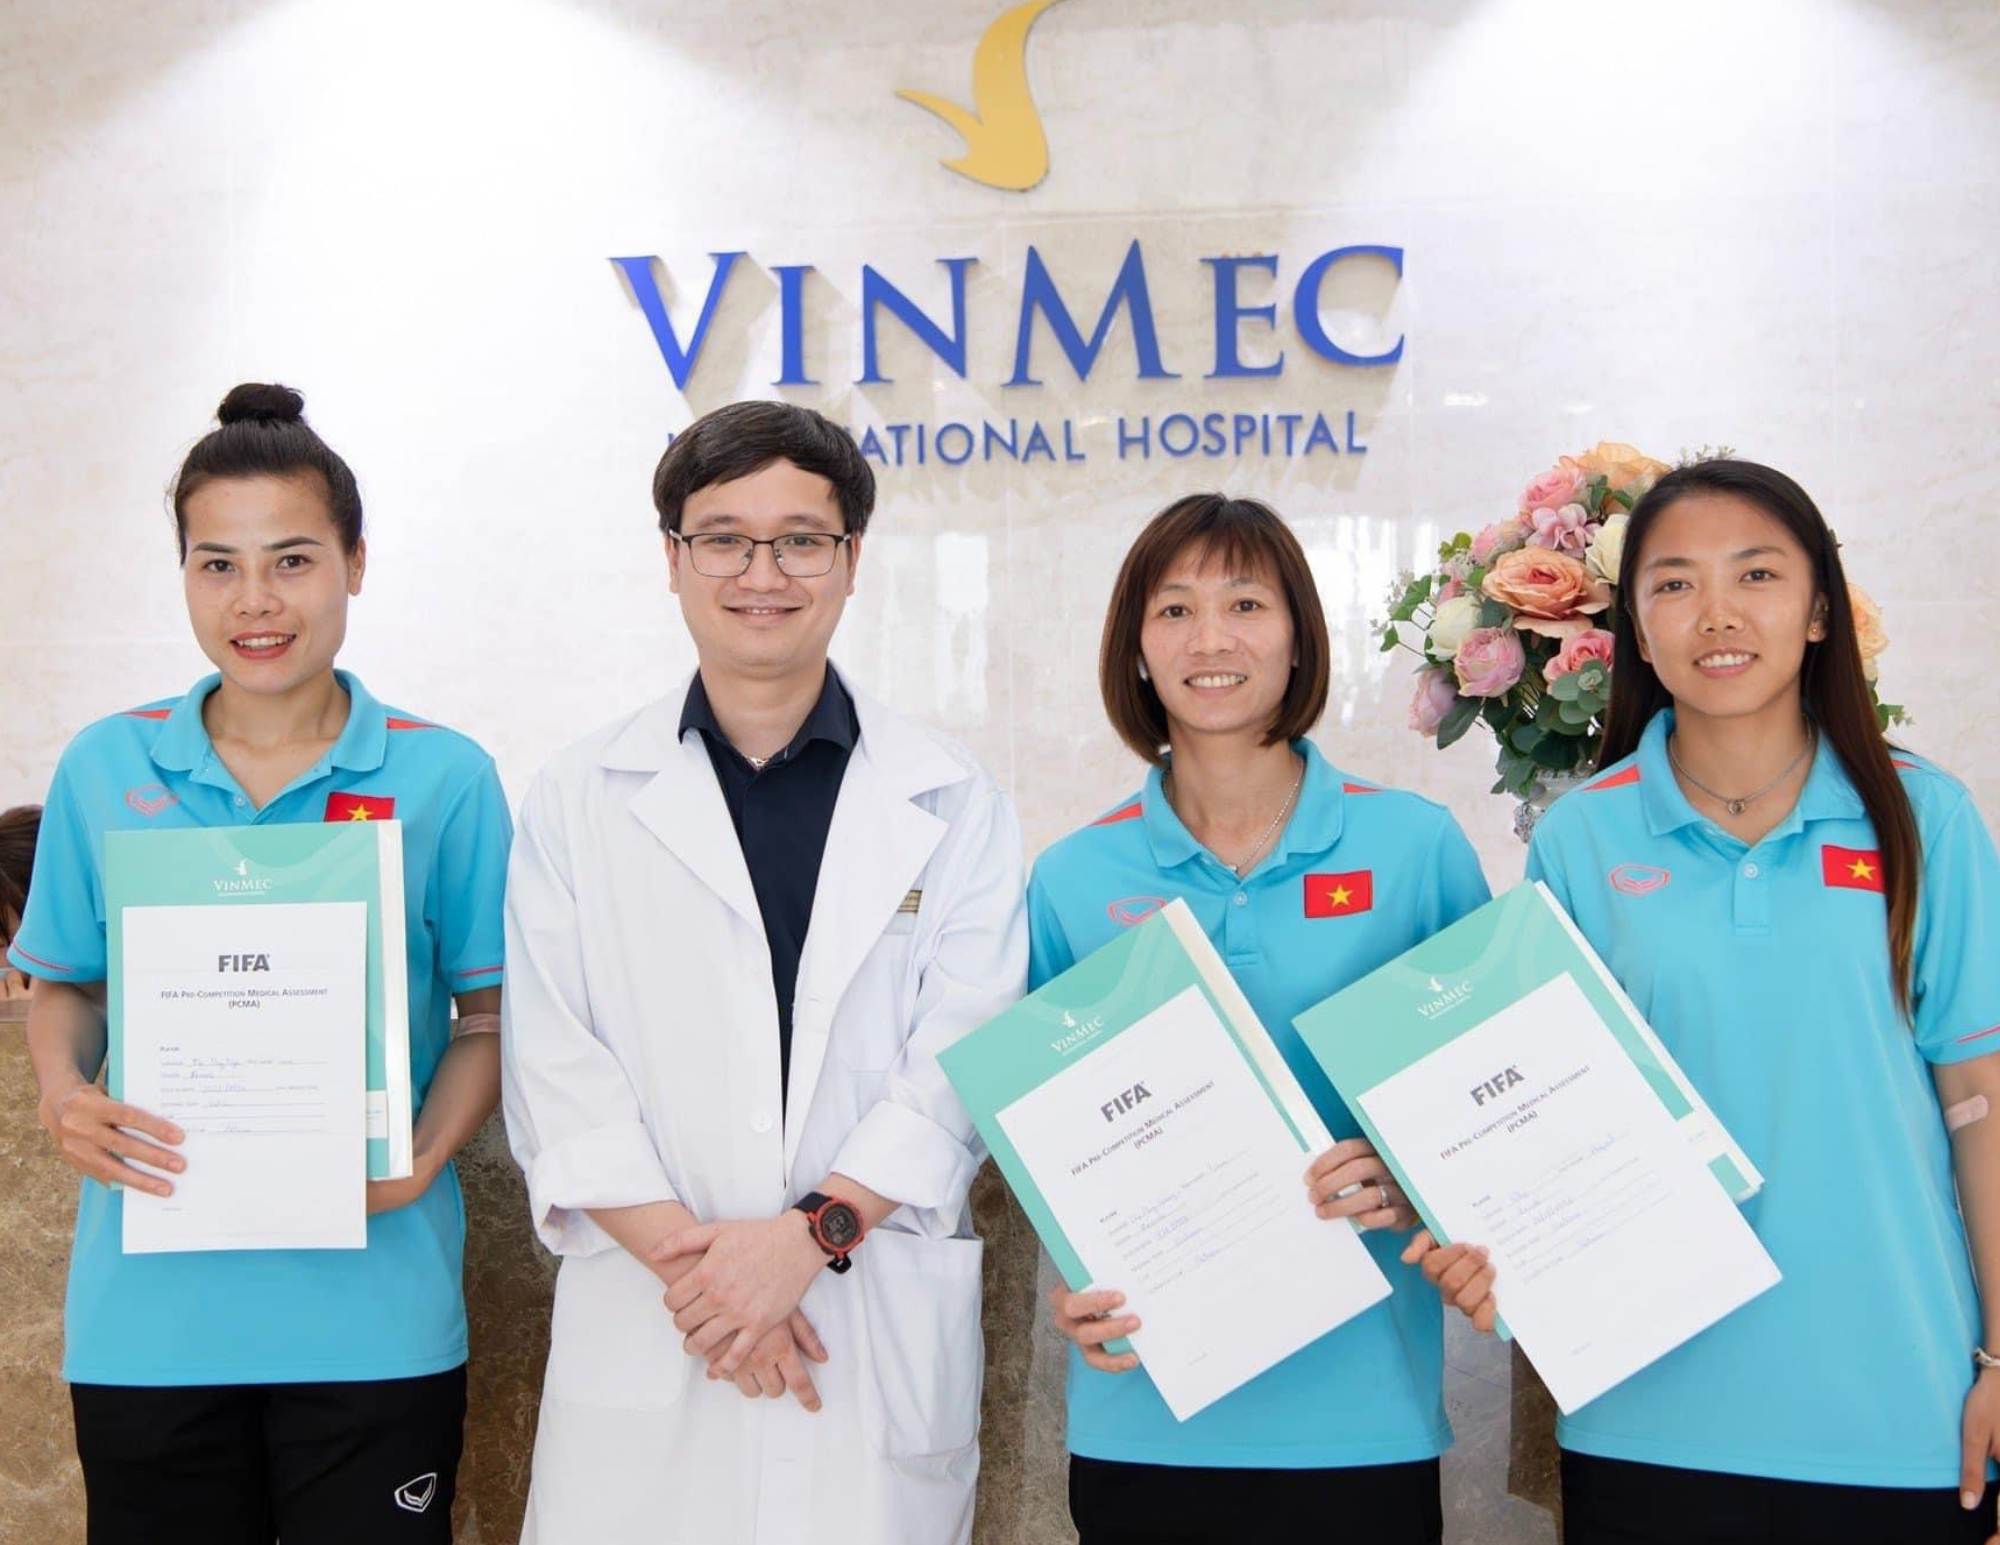 Các cầu thủ của tuyển nữ Việt Nam khám sức khỏe theo bộ tiêu chuẩn đánh giá của FIFA trước khi lên đường tham dự World Cup